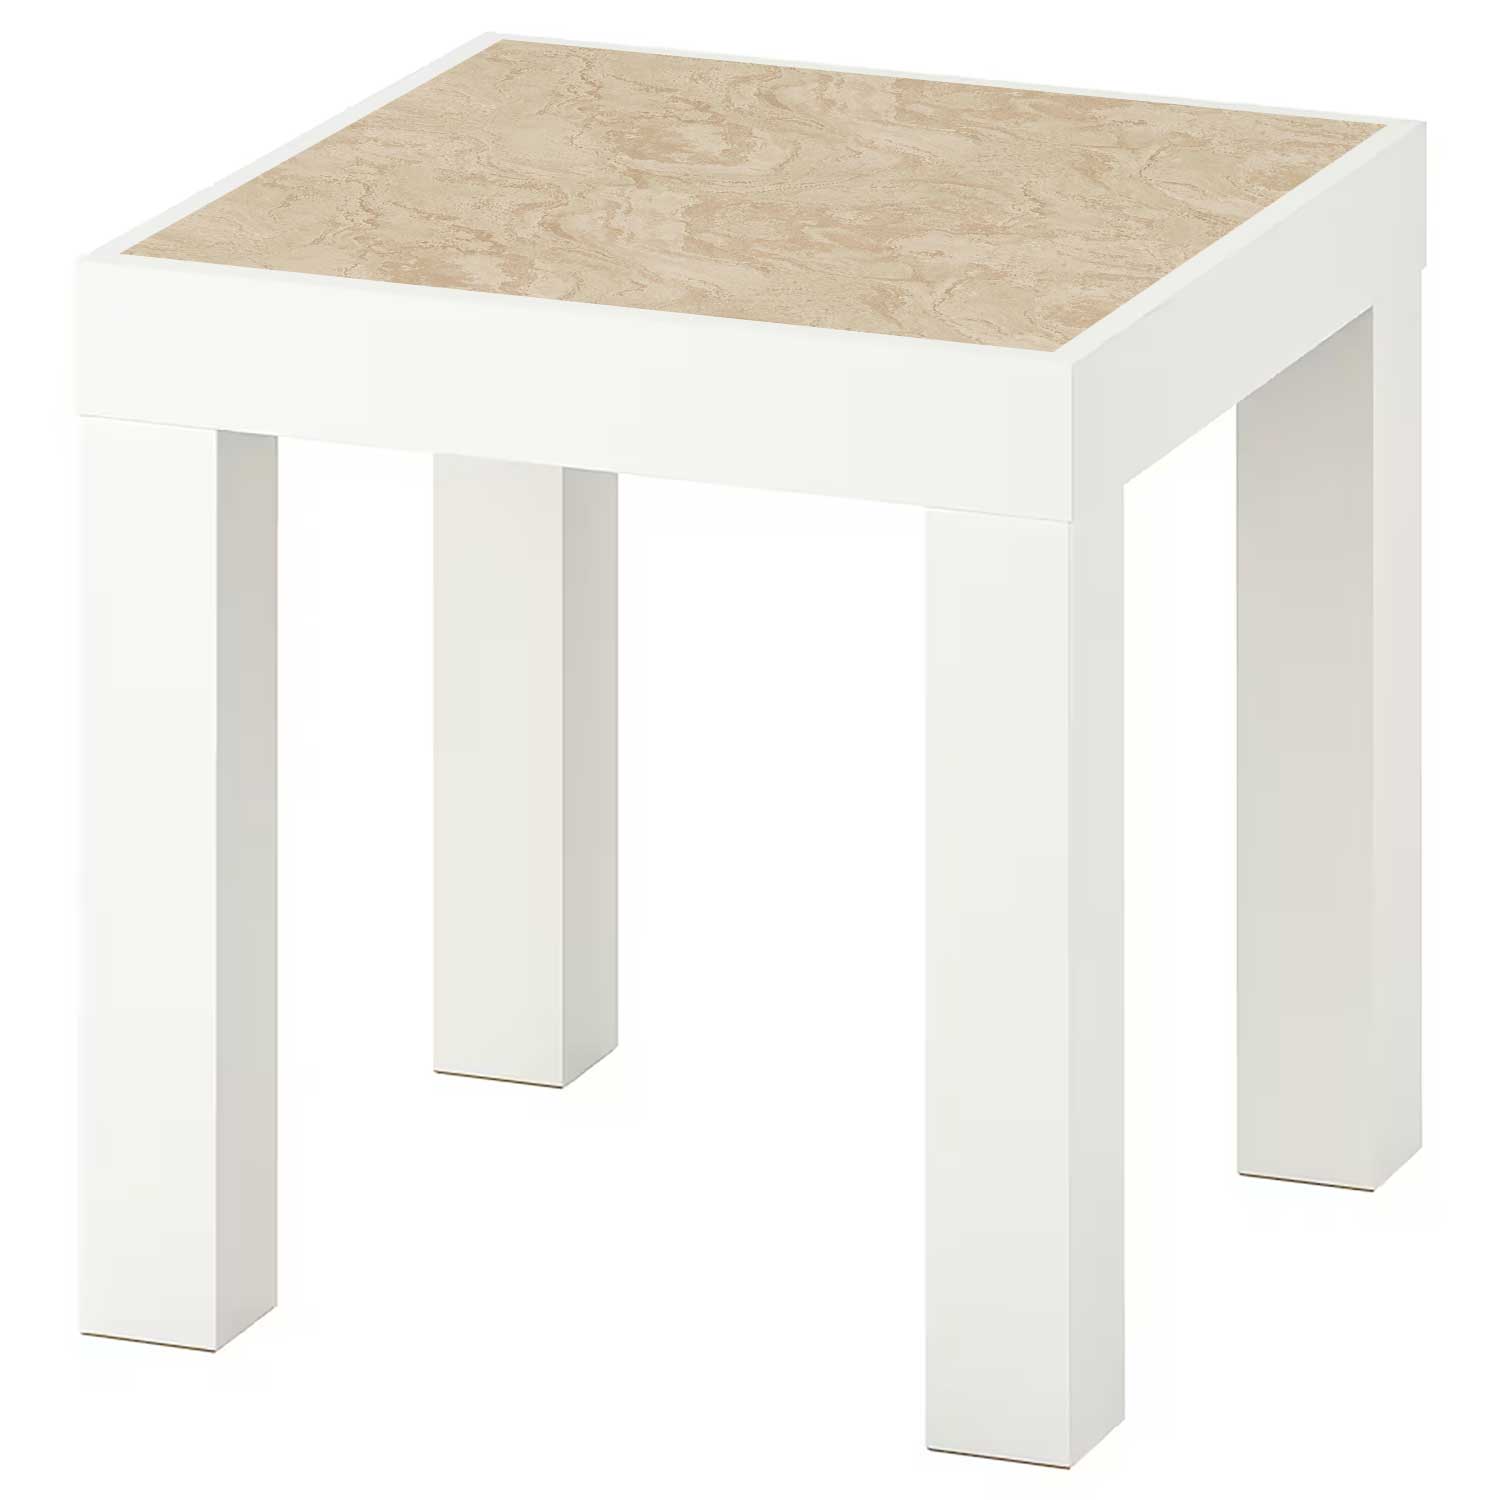 Möbelfolie für IKEA Lack Tisch 35x35 cm 'Travertin'